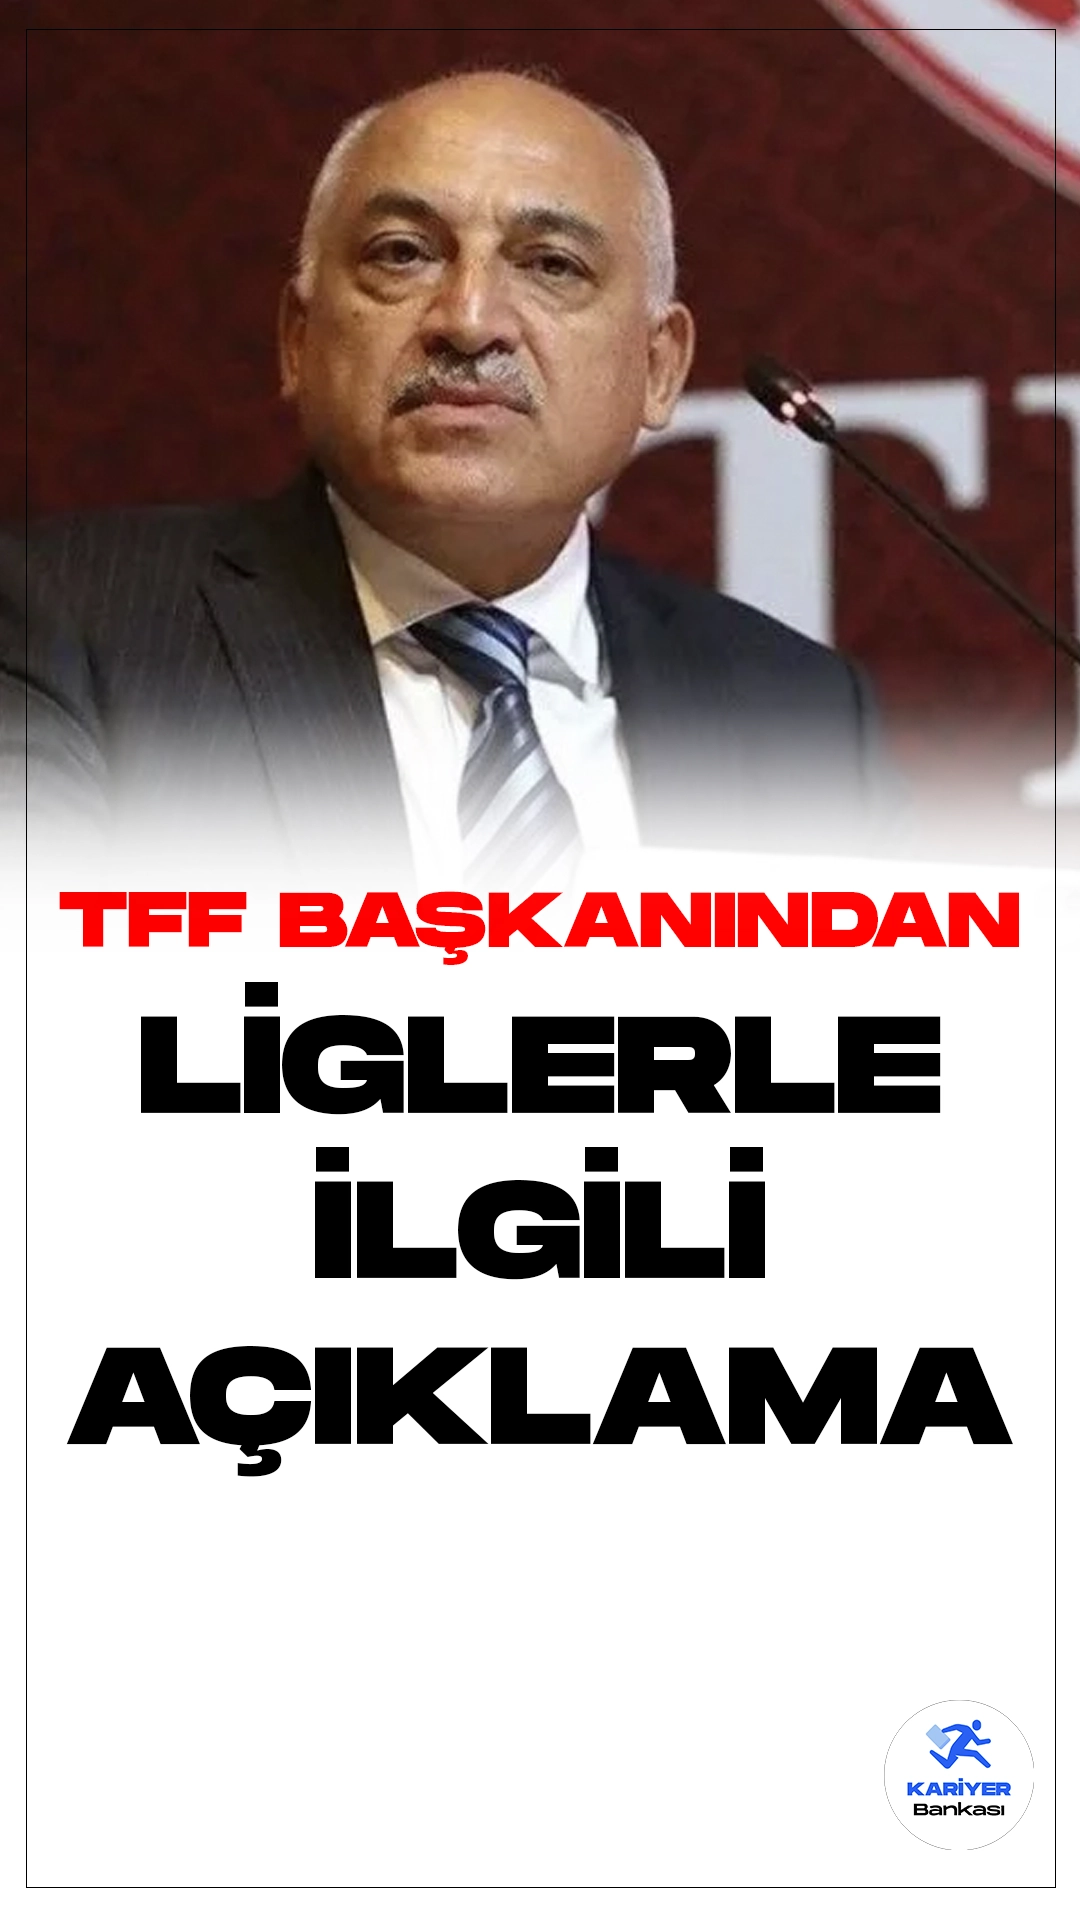 TFF Başkanı Mehmet Büyükekşi liglerle ilgili son dakika açıklamalarında bulundu. Halil Umut Meler'i ziyaret eden TFF Başkanı Mehmet Büyükekşi açıklamalarda bulundu. Büyükekşi, "Ligin nasıl devam edeceği ile ilgili karar alacağız." dedi.